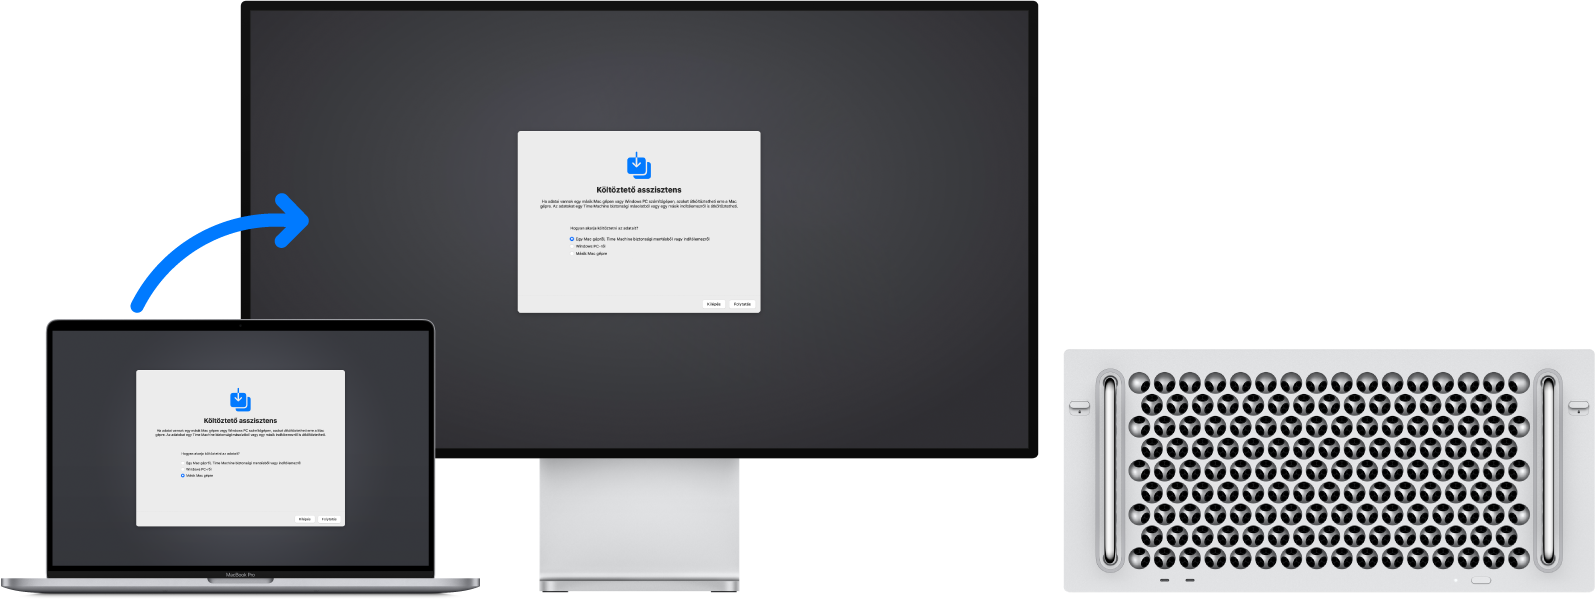 Egy MacBook Pro és egy Mac Pro. Mindkét gép kijelzőjén a Költöztető asszisztens képernyője látható. A MacBook Próról a Mac Pro felé mutató nyíl azt jelzi, hogy az adatok átküldése folyamatban van a két gép között.